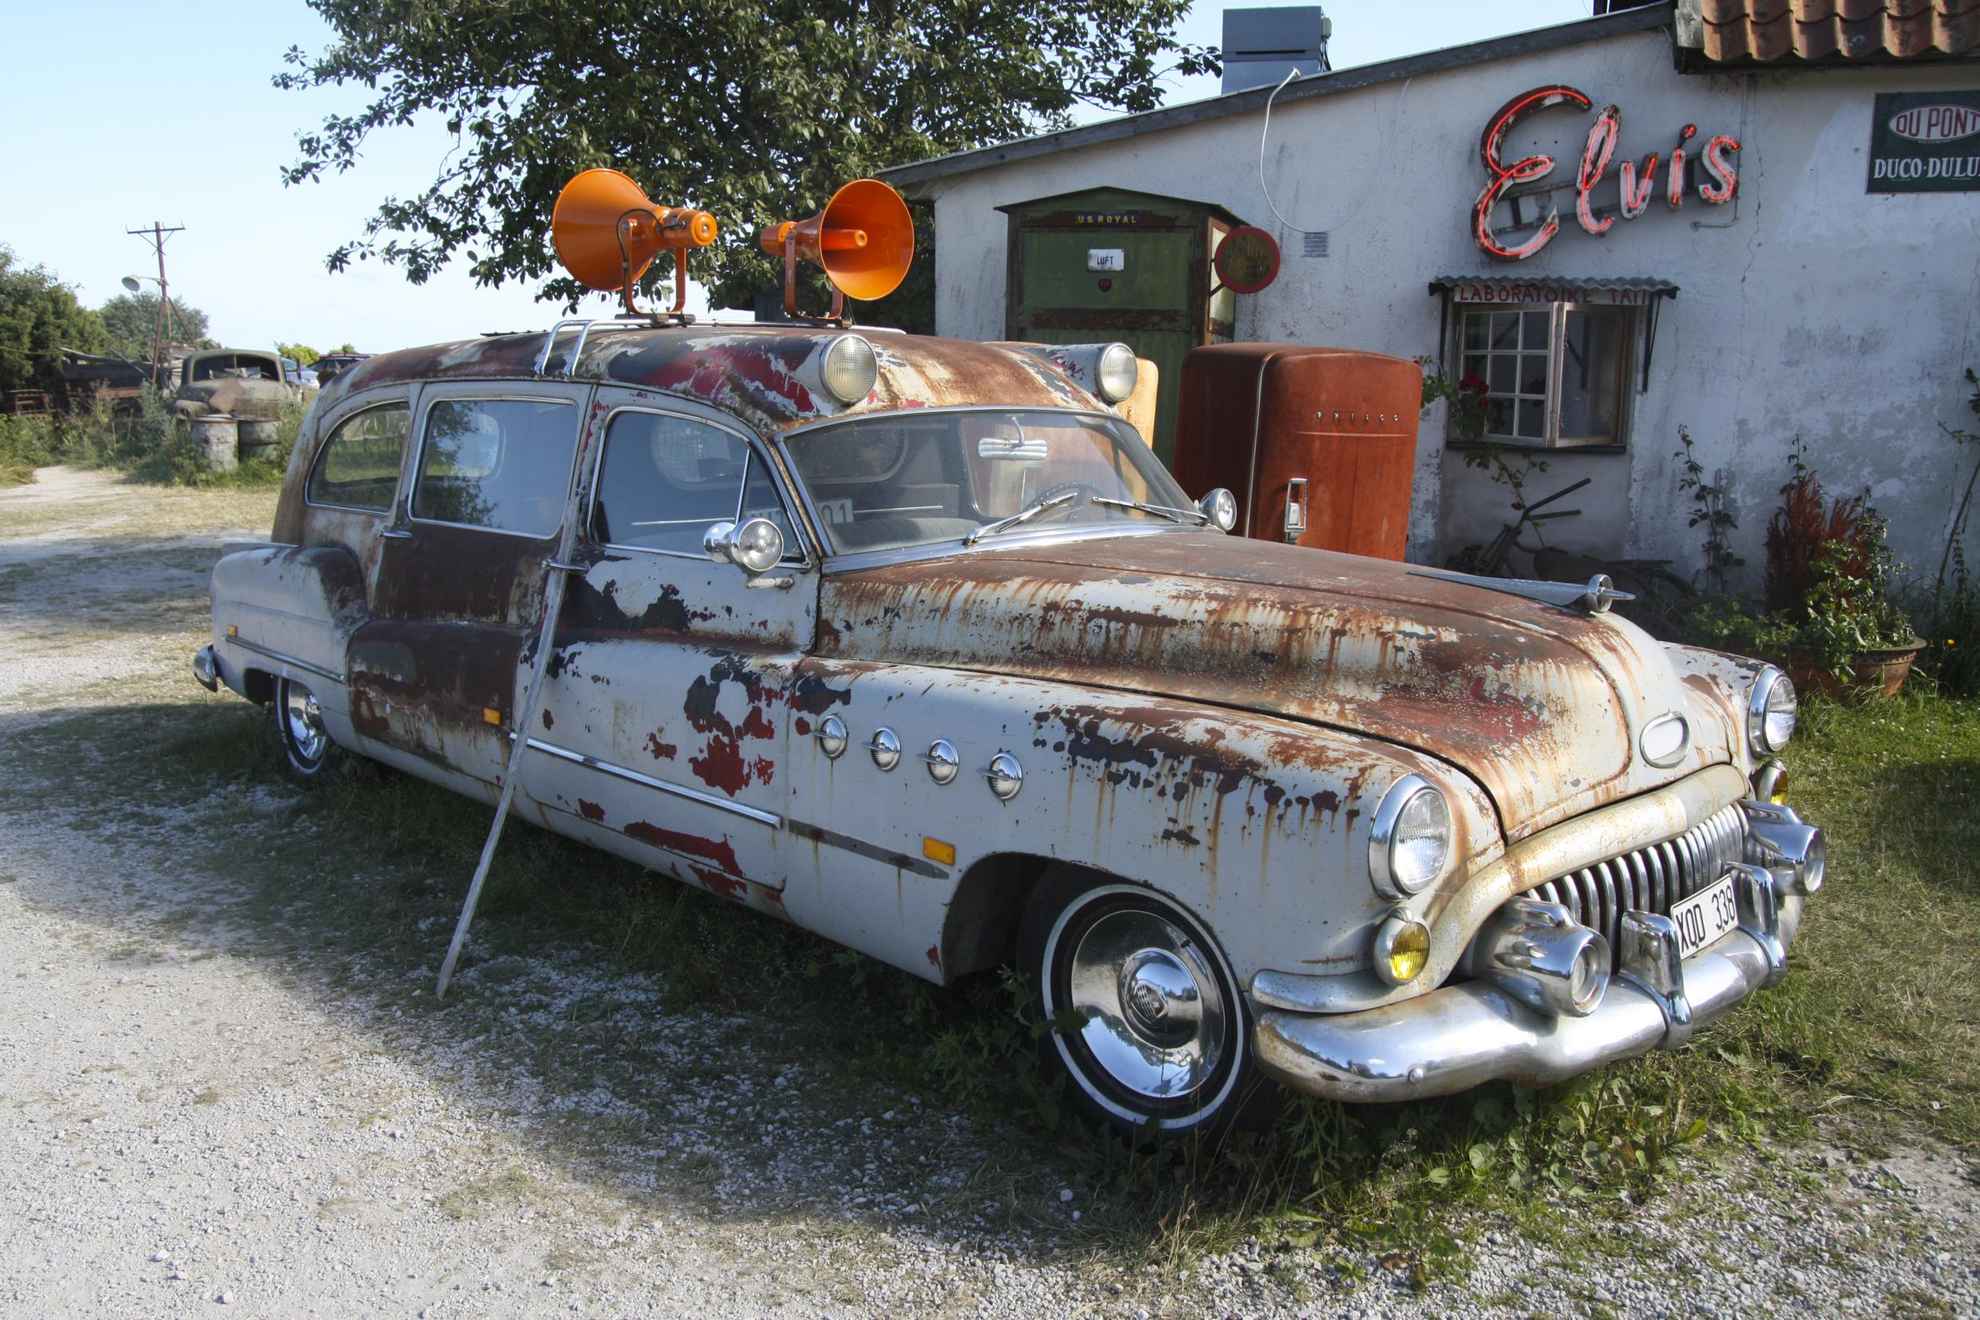 Ein altes rostiges Auto mit Sirenen auf dem Dach vor einer alten Tankstelle.